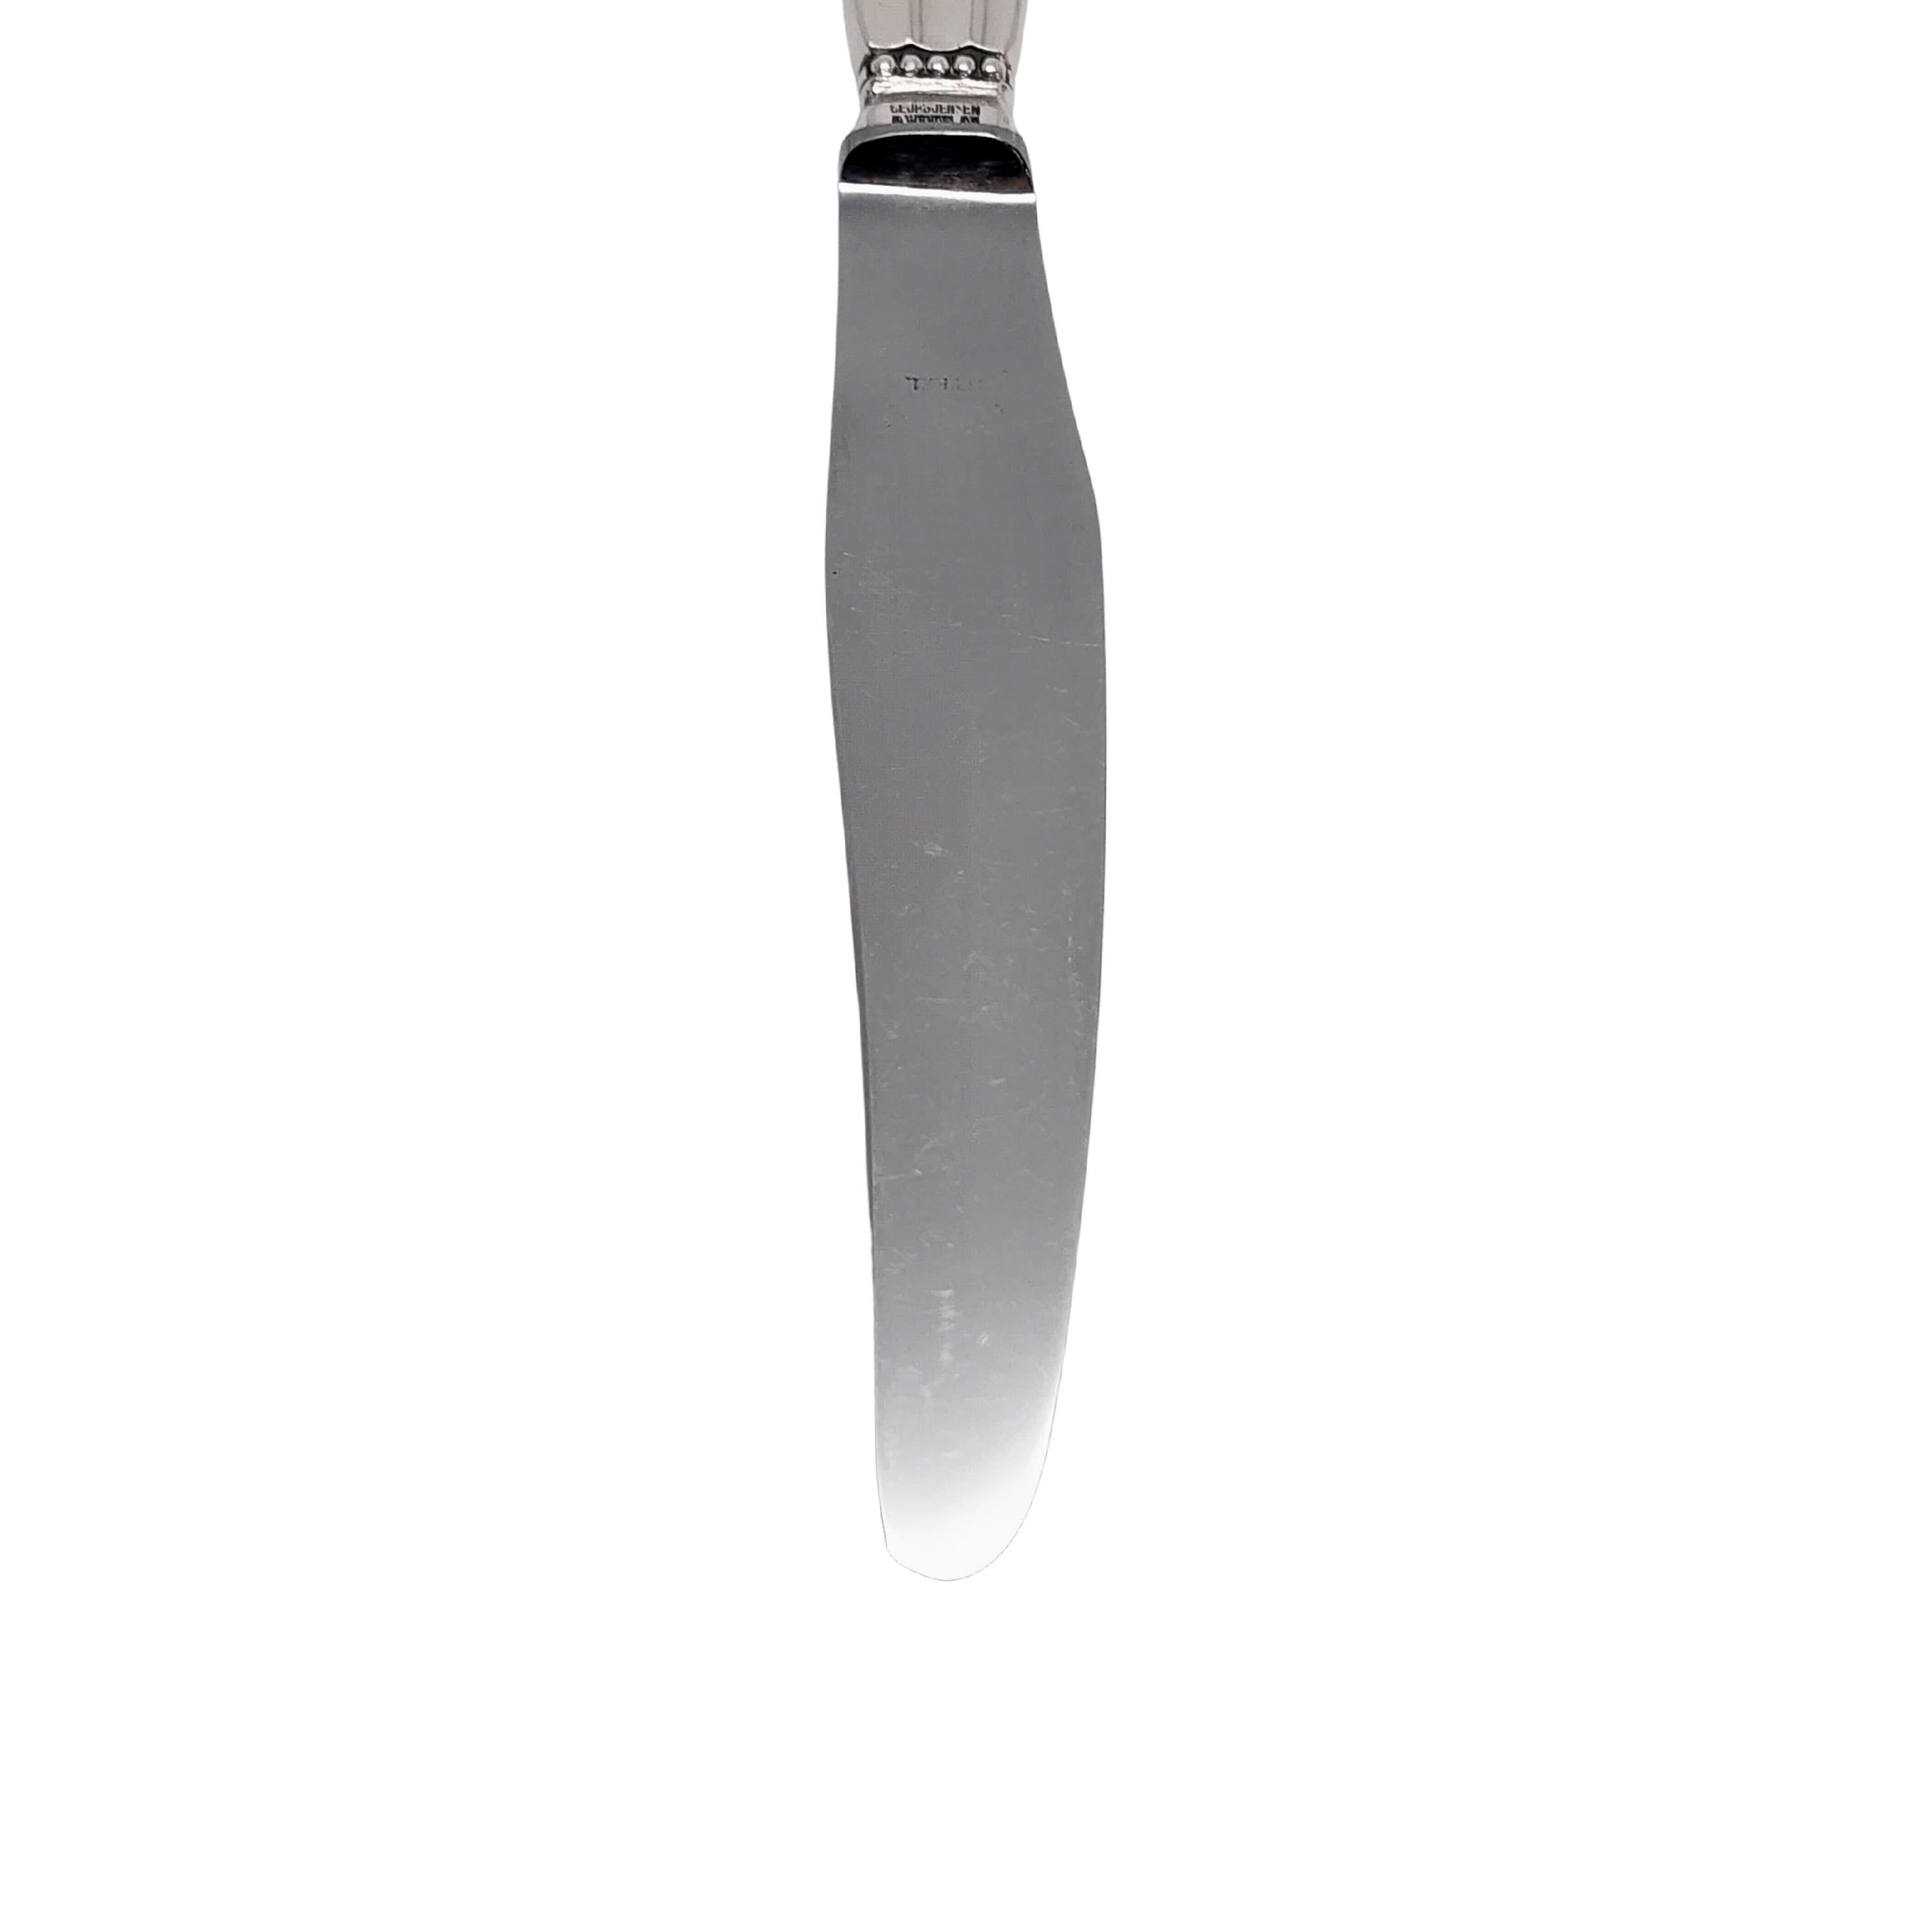 Jensen & Wendel Denmark Acorn Sterling Handle Stainless Blade Knives 8